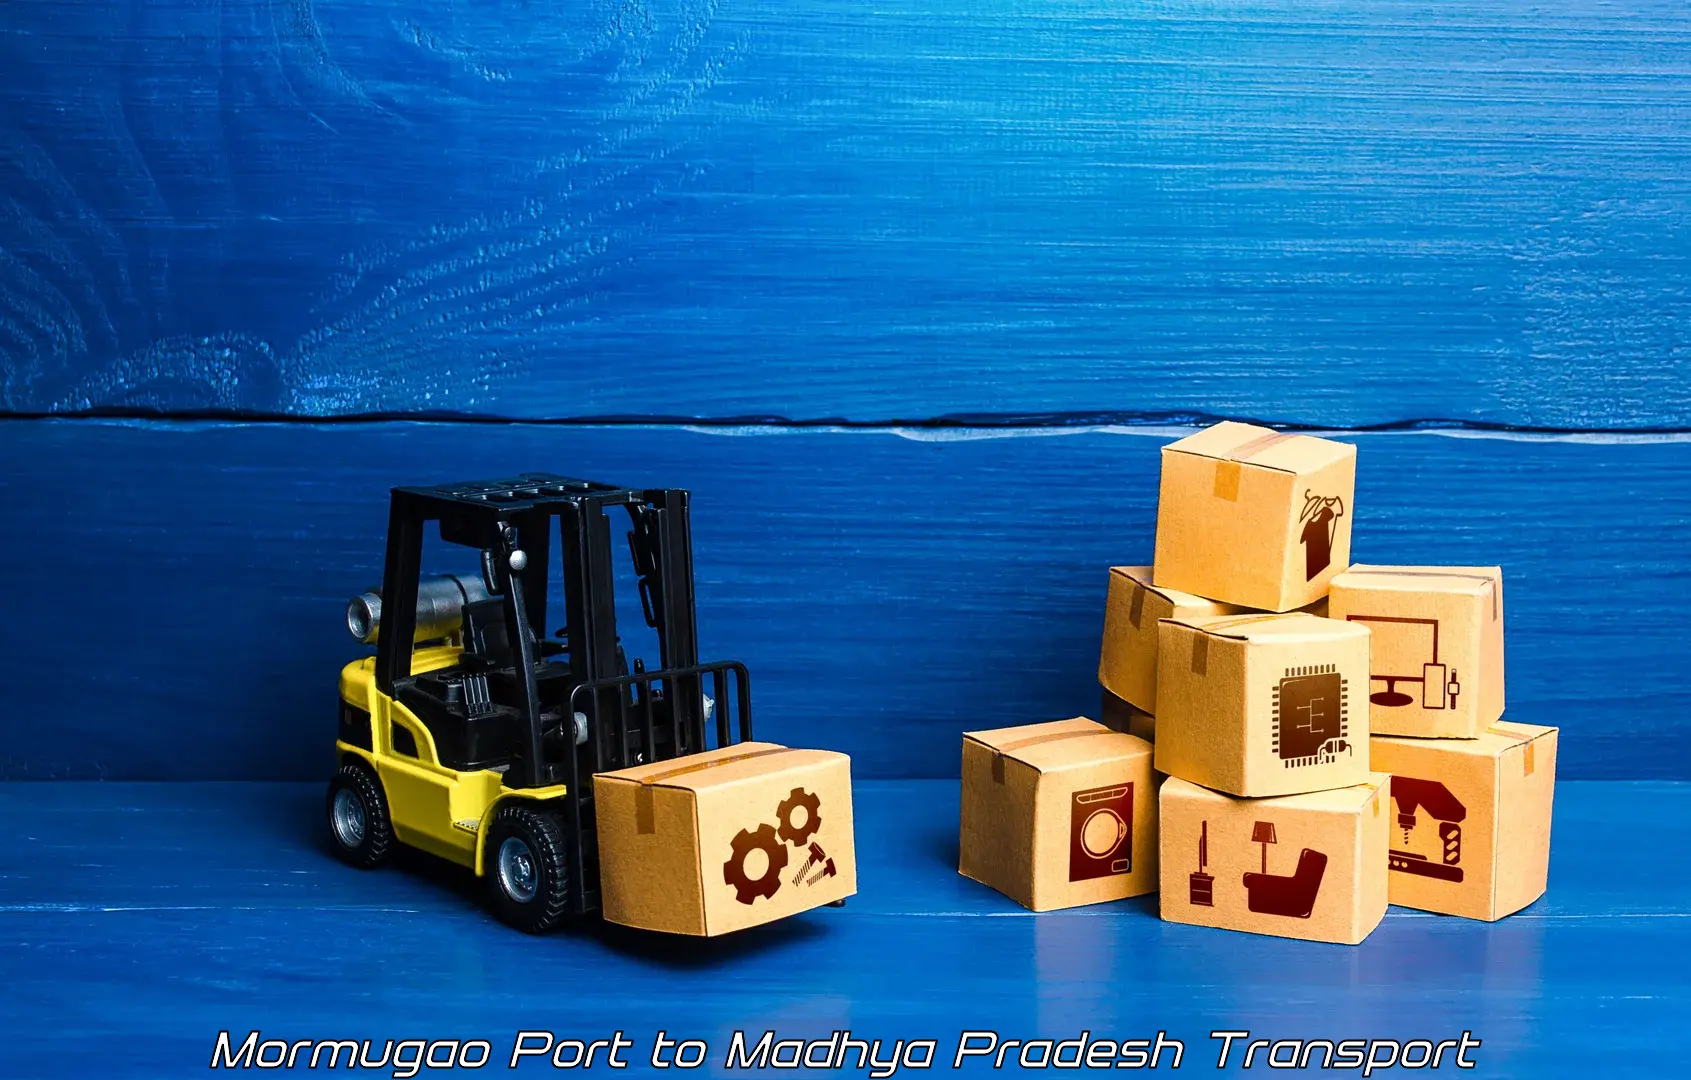 Material transport services Mormugao Port to Mandla